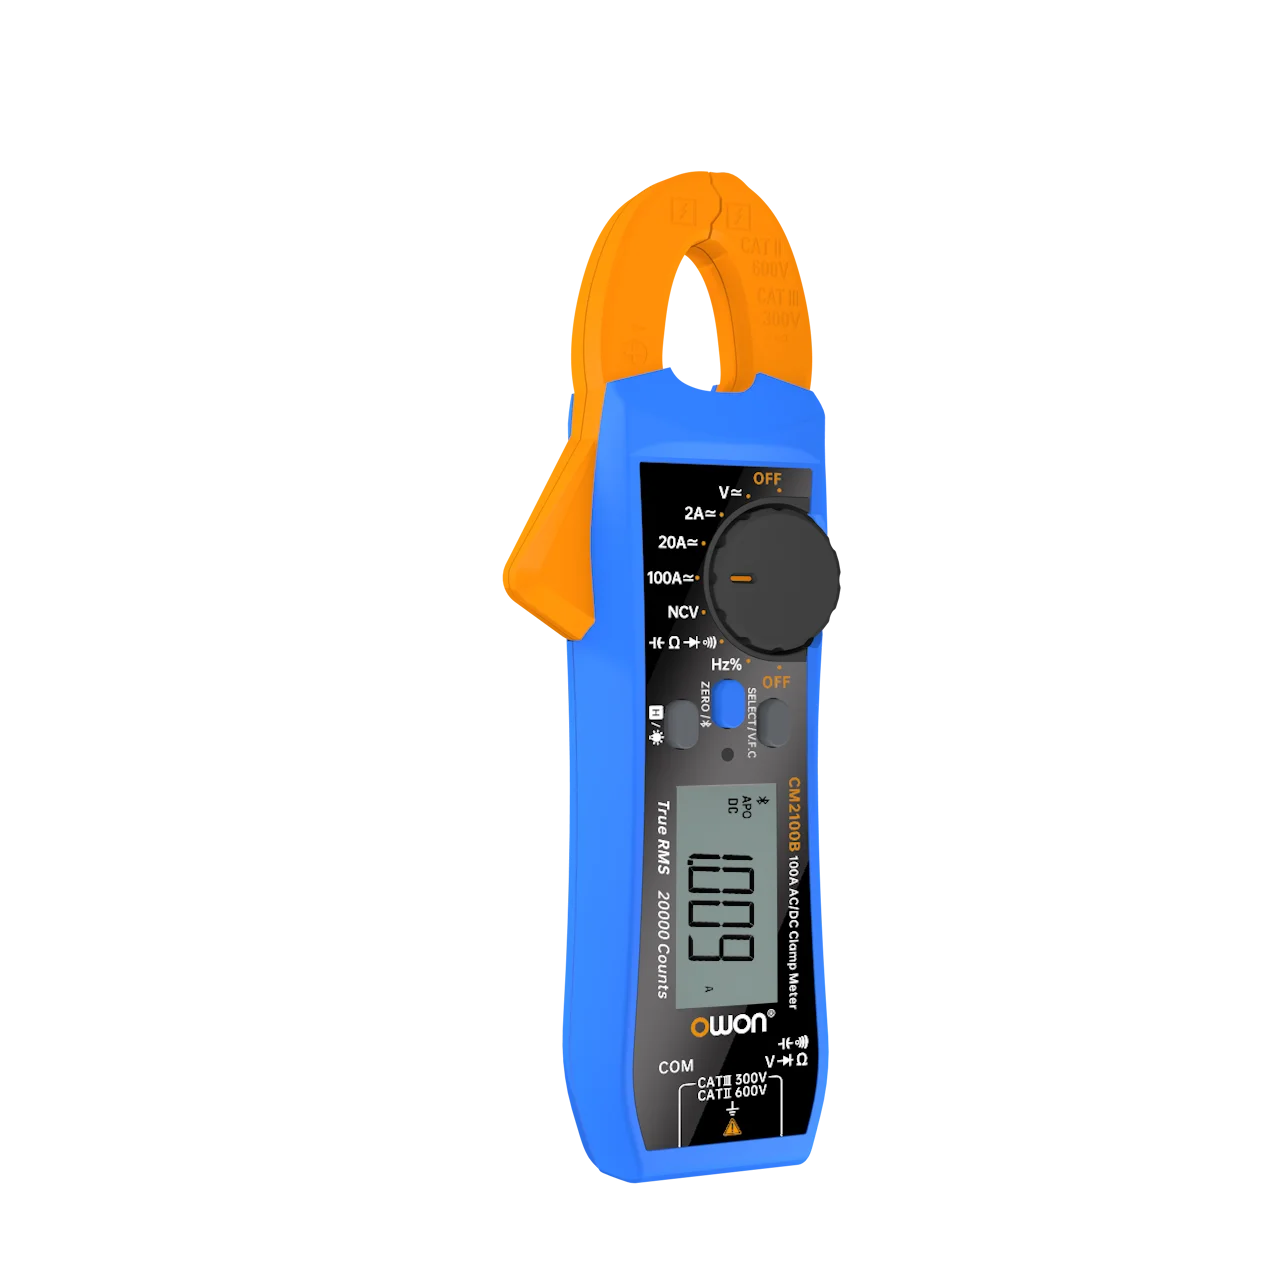 OWON CM2100 Digital Elétrica Testador de 100 amp 600V Inteligente AC/DC Medidor de Pinça True RMS VFC diodo Multímetro